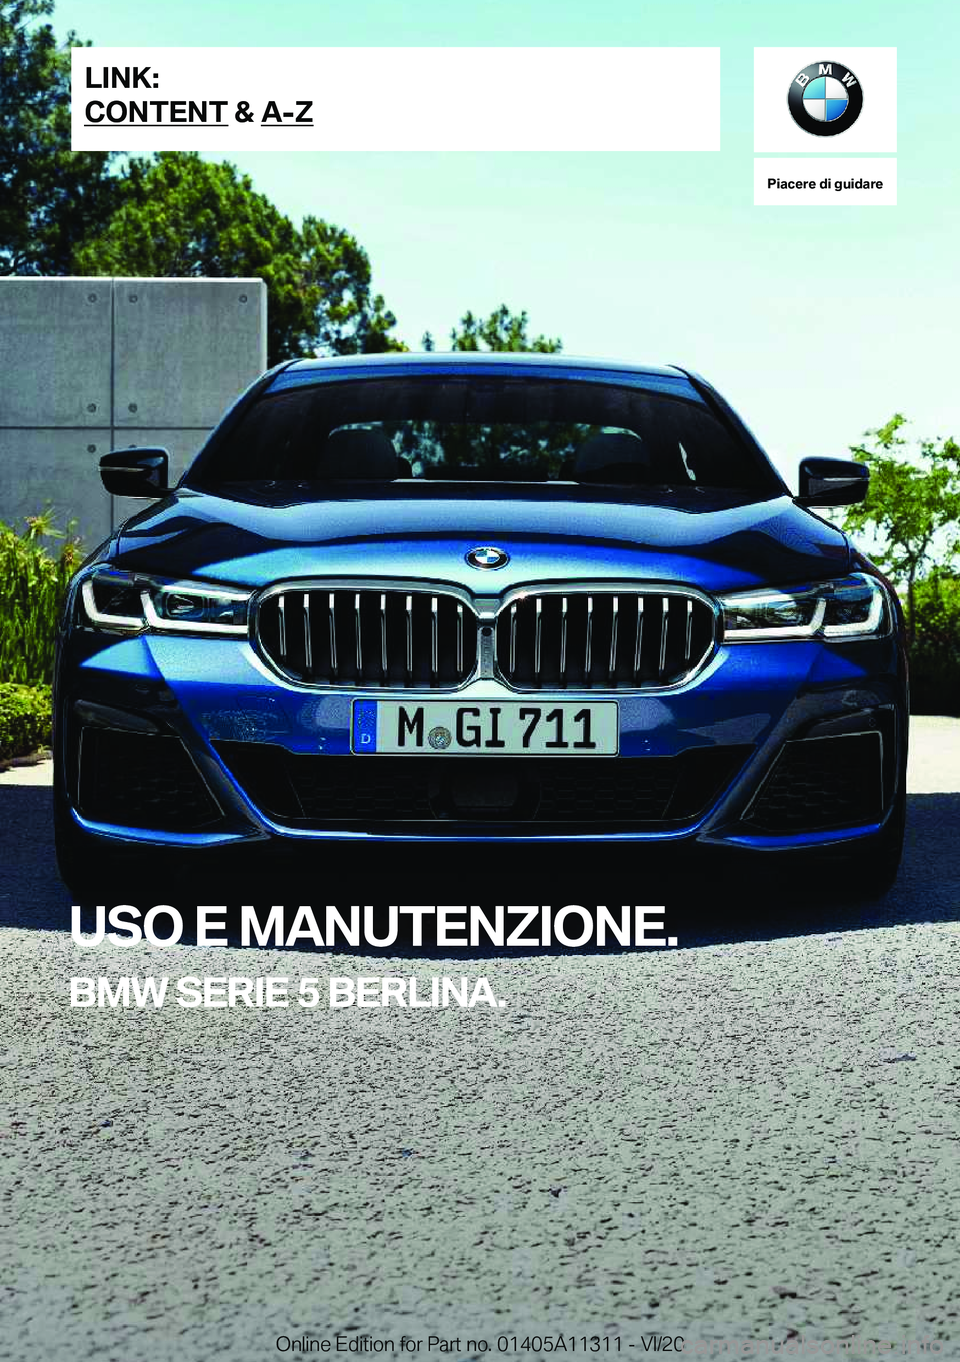 BMW 5 SERIES 2021  Libretti Di Uso E manutenzione (in Italian) �P�i�a�c�e�r�e��d�i��g�u�i�d�a�r�e
�U�S�O��E��M�A�N�U�T�E�N�Z�I�O�N�E�.
�B�M�W��S�E�R�I�E��5��B�E�R�L�I�N�A�.�L�I�N�K�:
�C�O�N�T�E�N�T��&��A�-�Z�O�n�l�i�n�e��E�d�i�t�i�o�n��f�o�r��P�a�r�t�